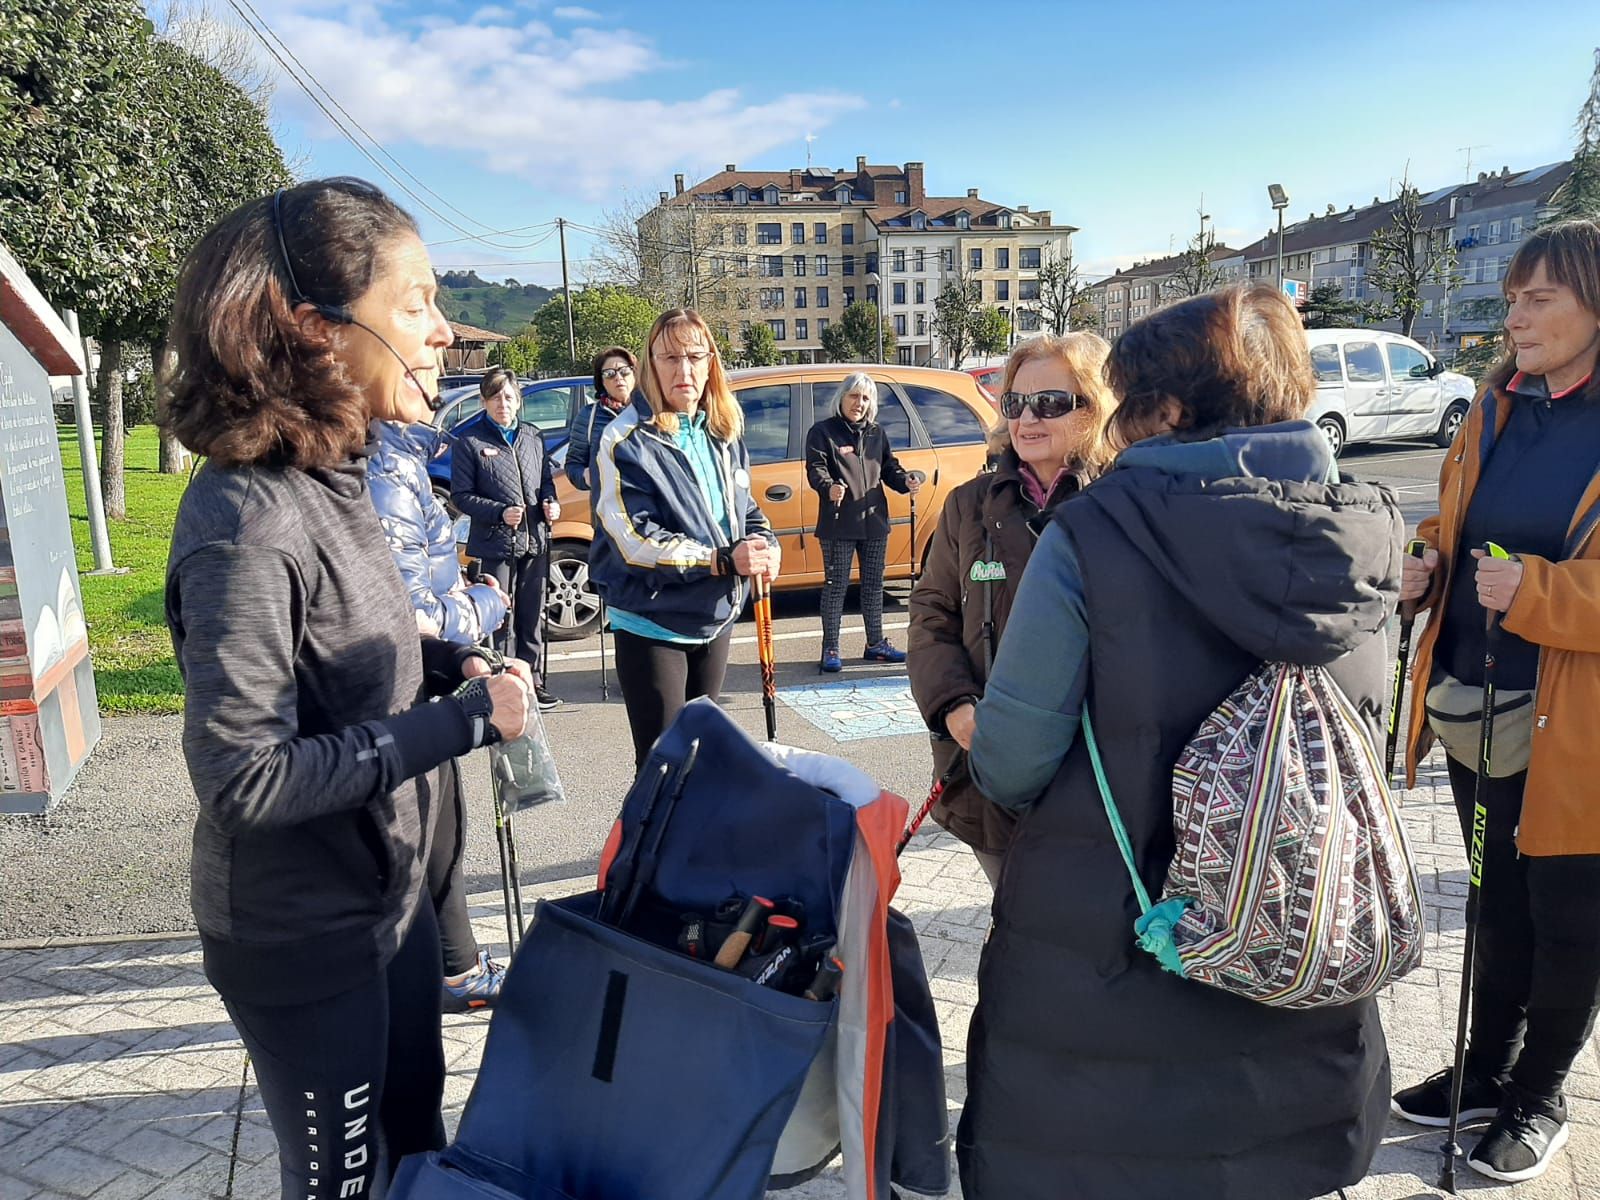 Llanera se suma a la marcha nórdica: así son las sesiones en las que participan más de 30 mujeres